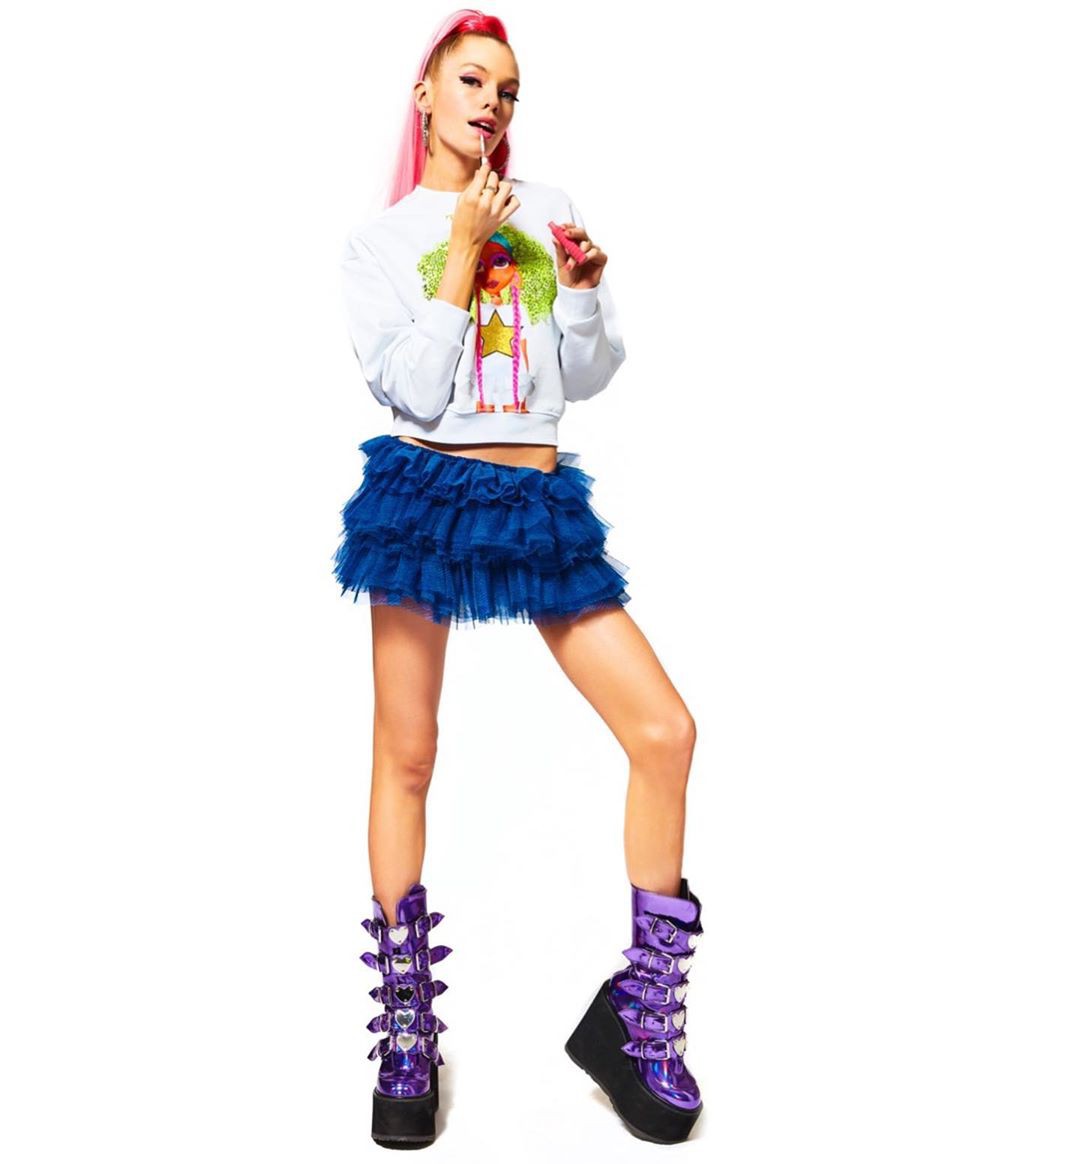 Thiên thần nội y Stella Maxwell body cực phẩm như búp bê Barbie sống - Hình 9